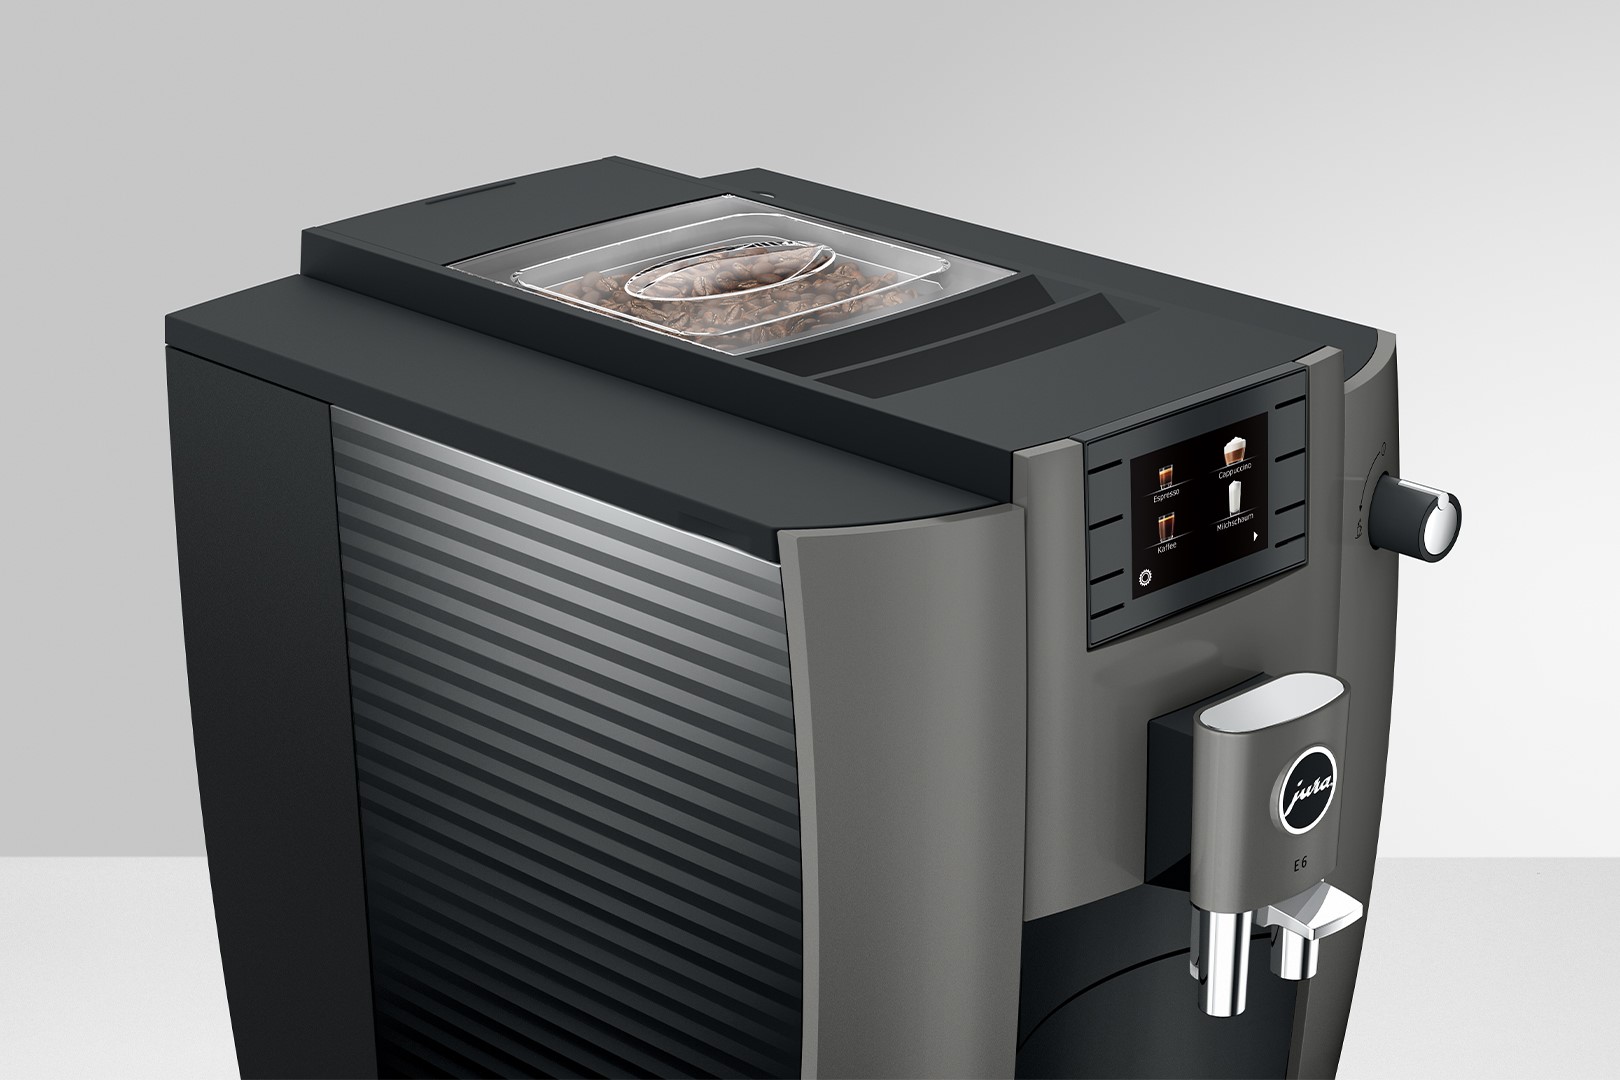 E6 (EC) Kaffeevollautomat in Dark Inox, 1,9 Liter Füllmenge Wassertank, Breite 28cm, Höhe 35,1cm, Tiefe 44,6cm